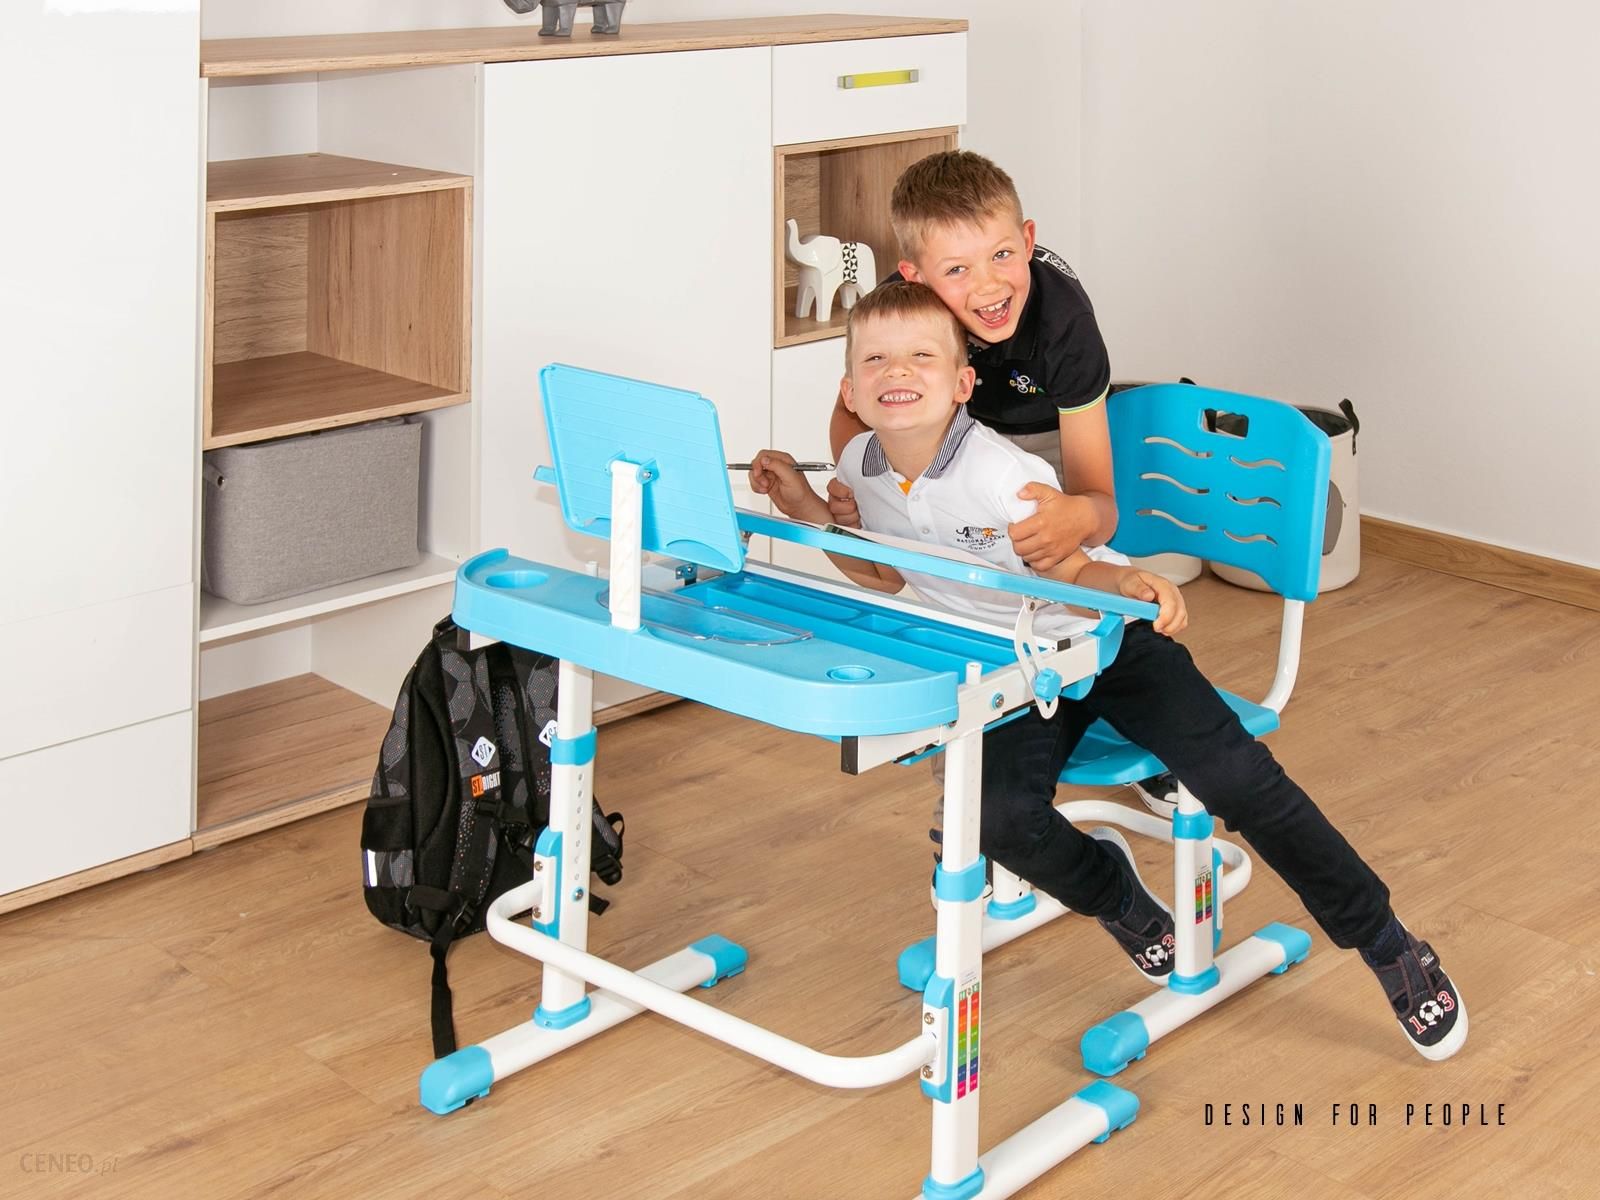 Zestaw dziecięcy do nauki krzesło i biurko Sandy